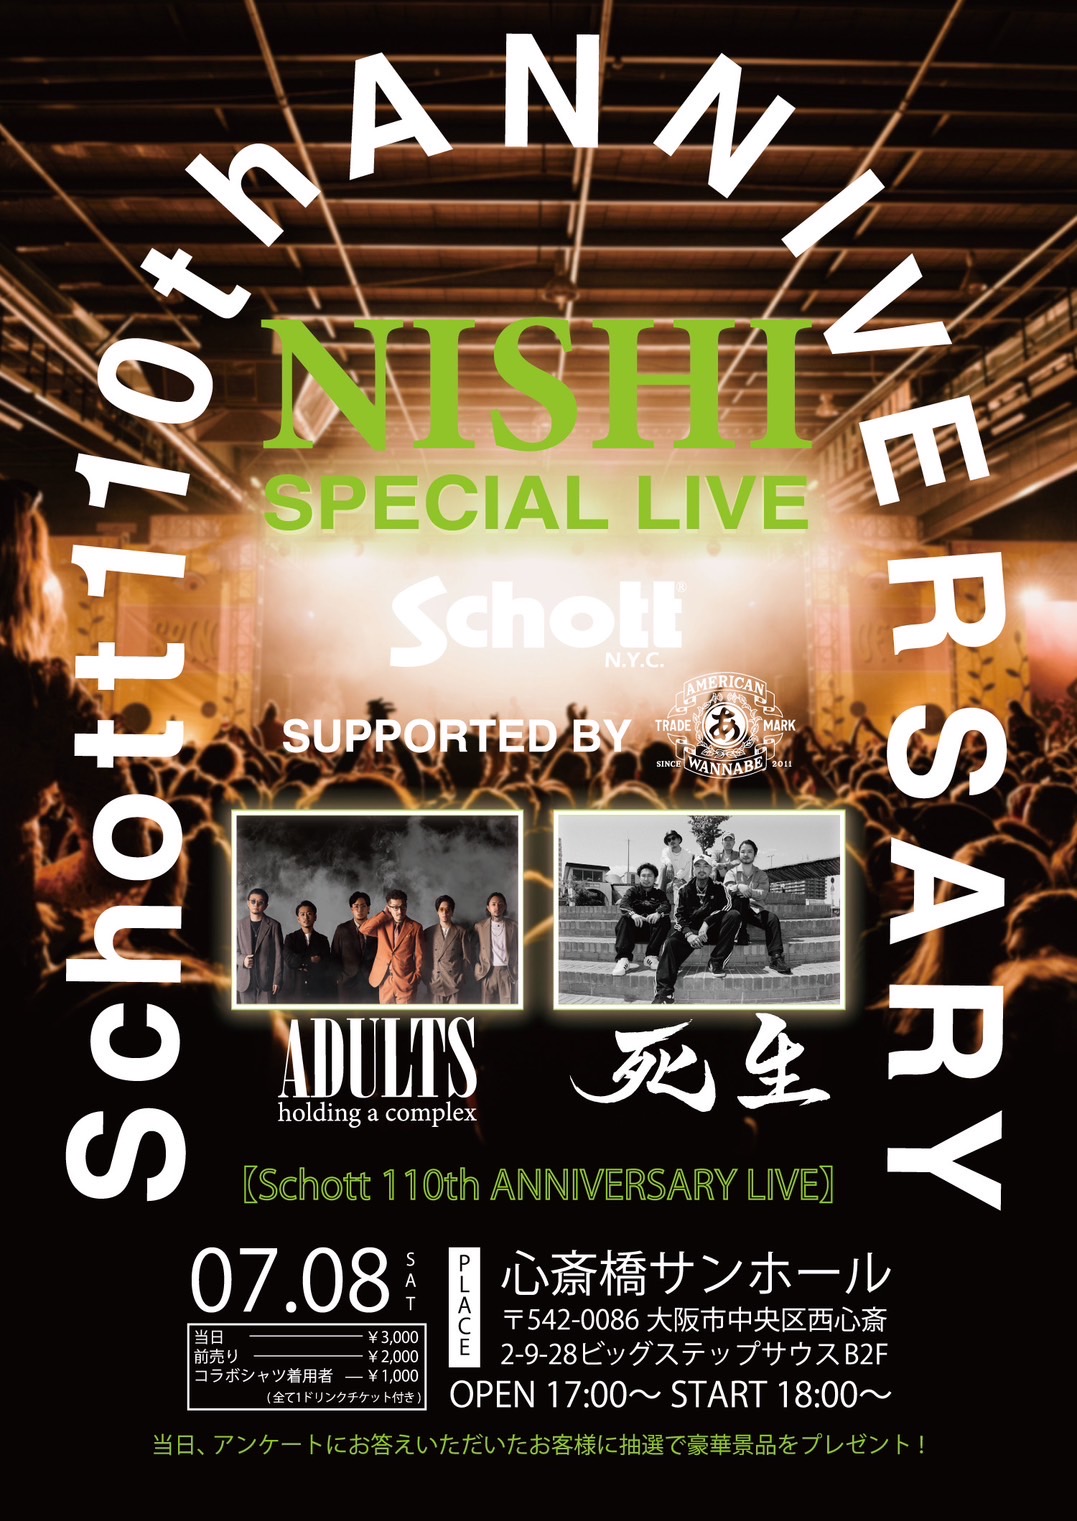 Schott 110th ANNIVERSARY SPECIALLIVE〜NISHI〜